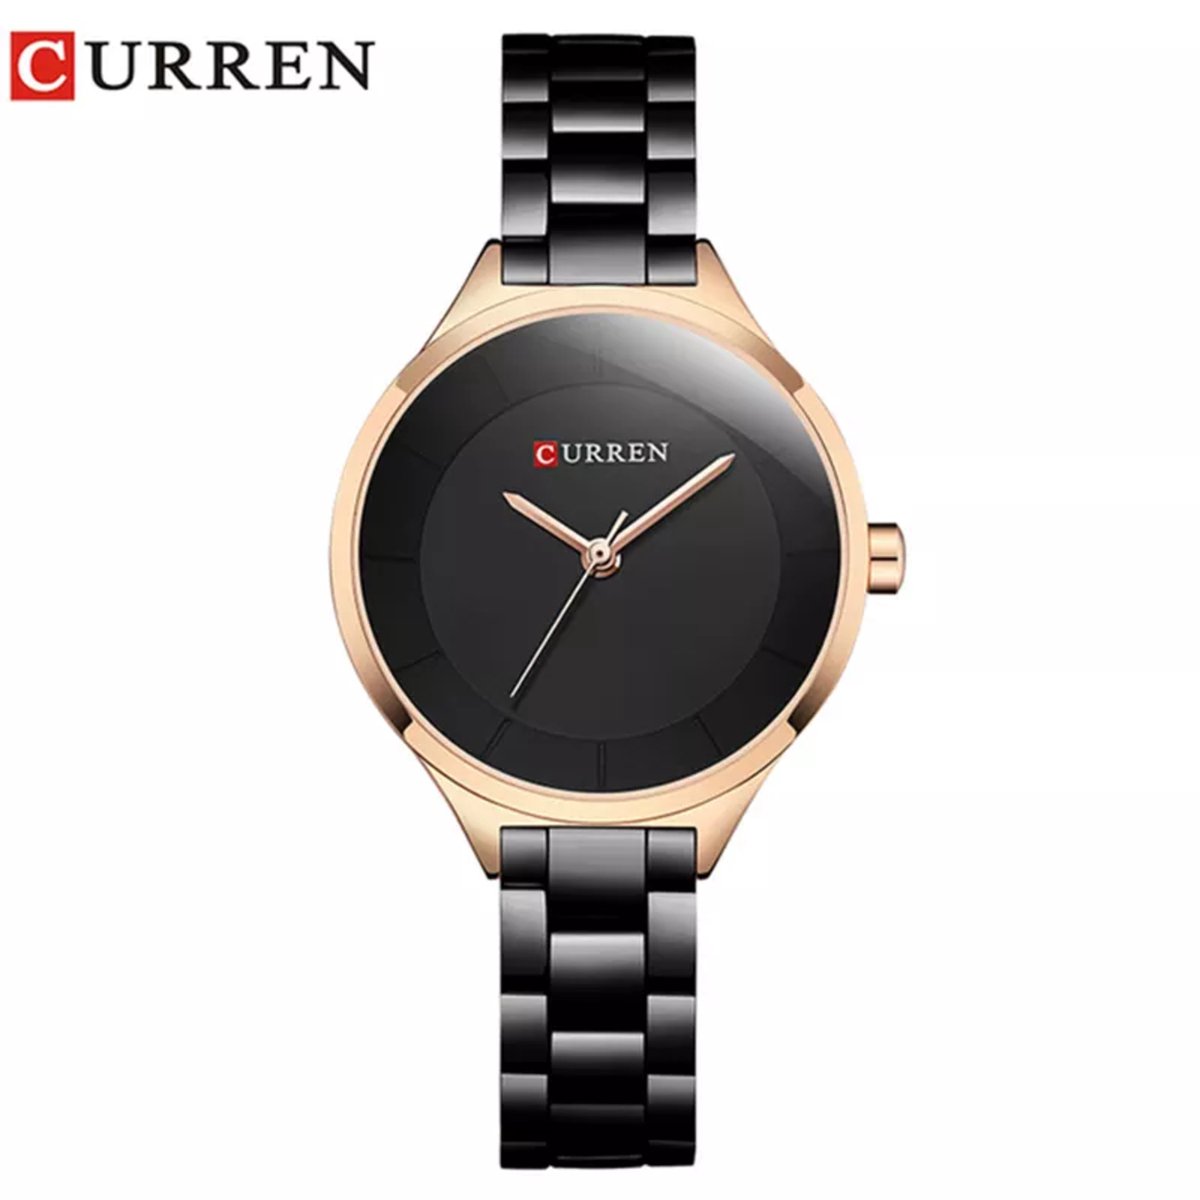 Curren Horloges voor Vrouwen – Luxe Zwart/Goudkleurig Design